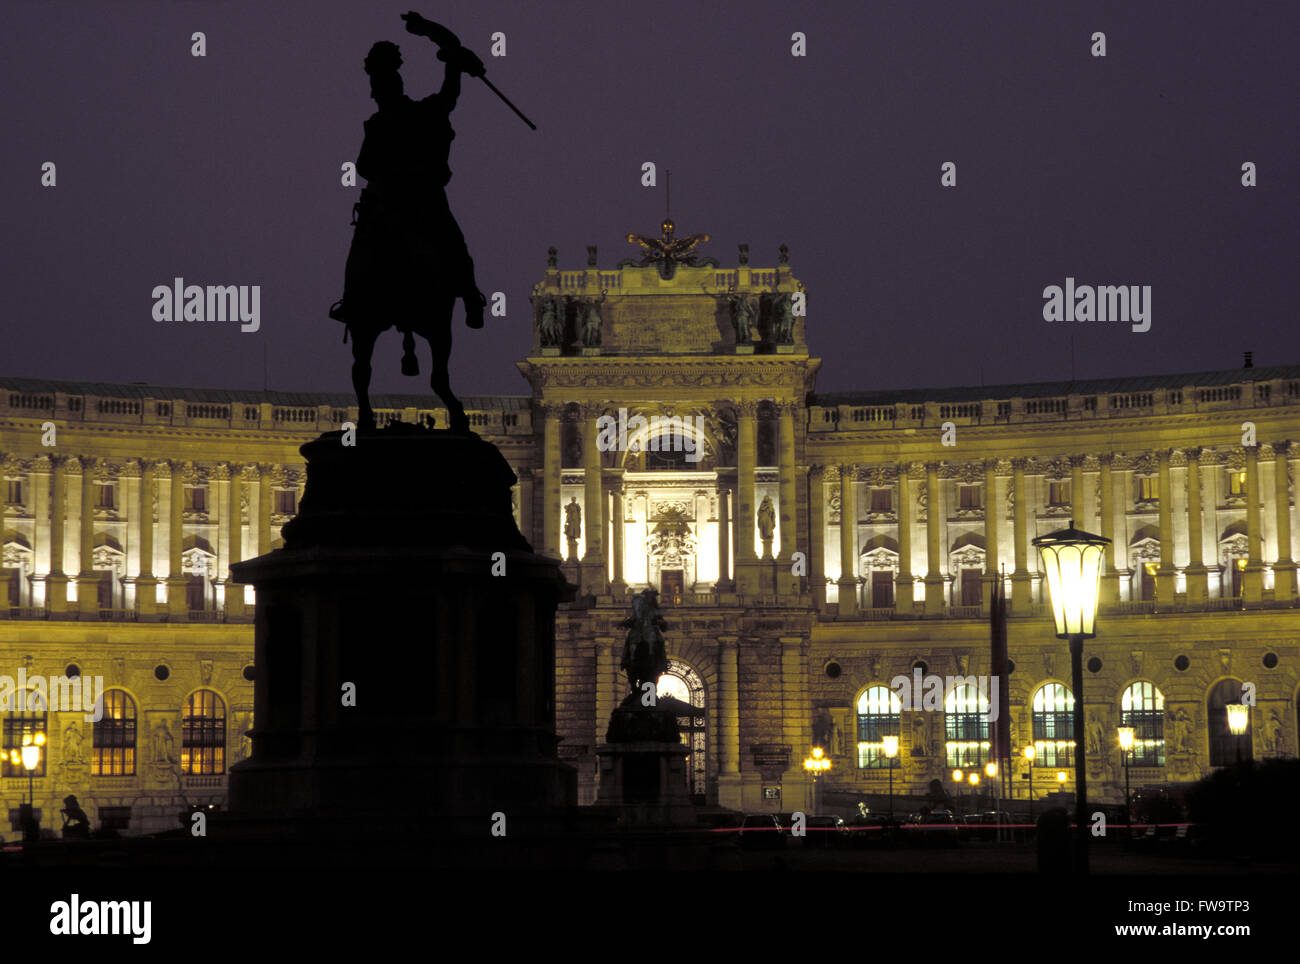 AUT, l'Autriche, Vienne, l'archiduc Karl monument situé en face de la Neue Hofburg. Tau, Oesterreich, Wien, Erzherzog Karl Denkmal vor d Banque D'Images